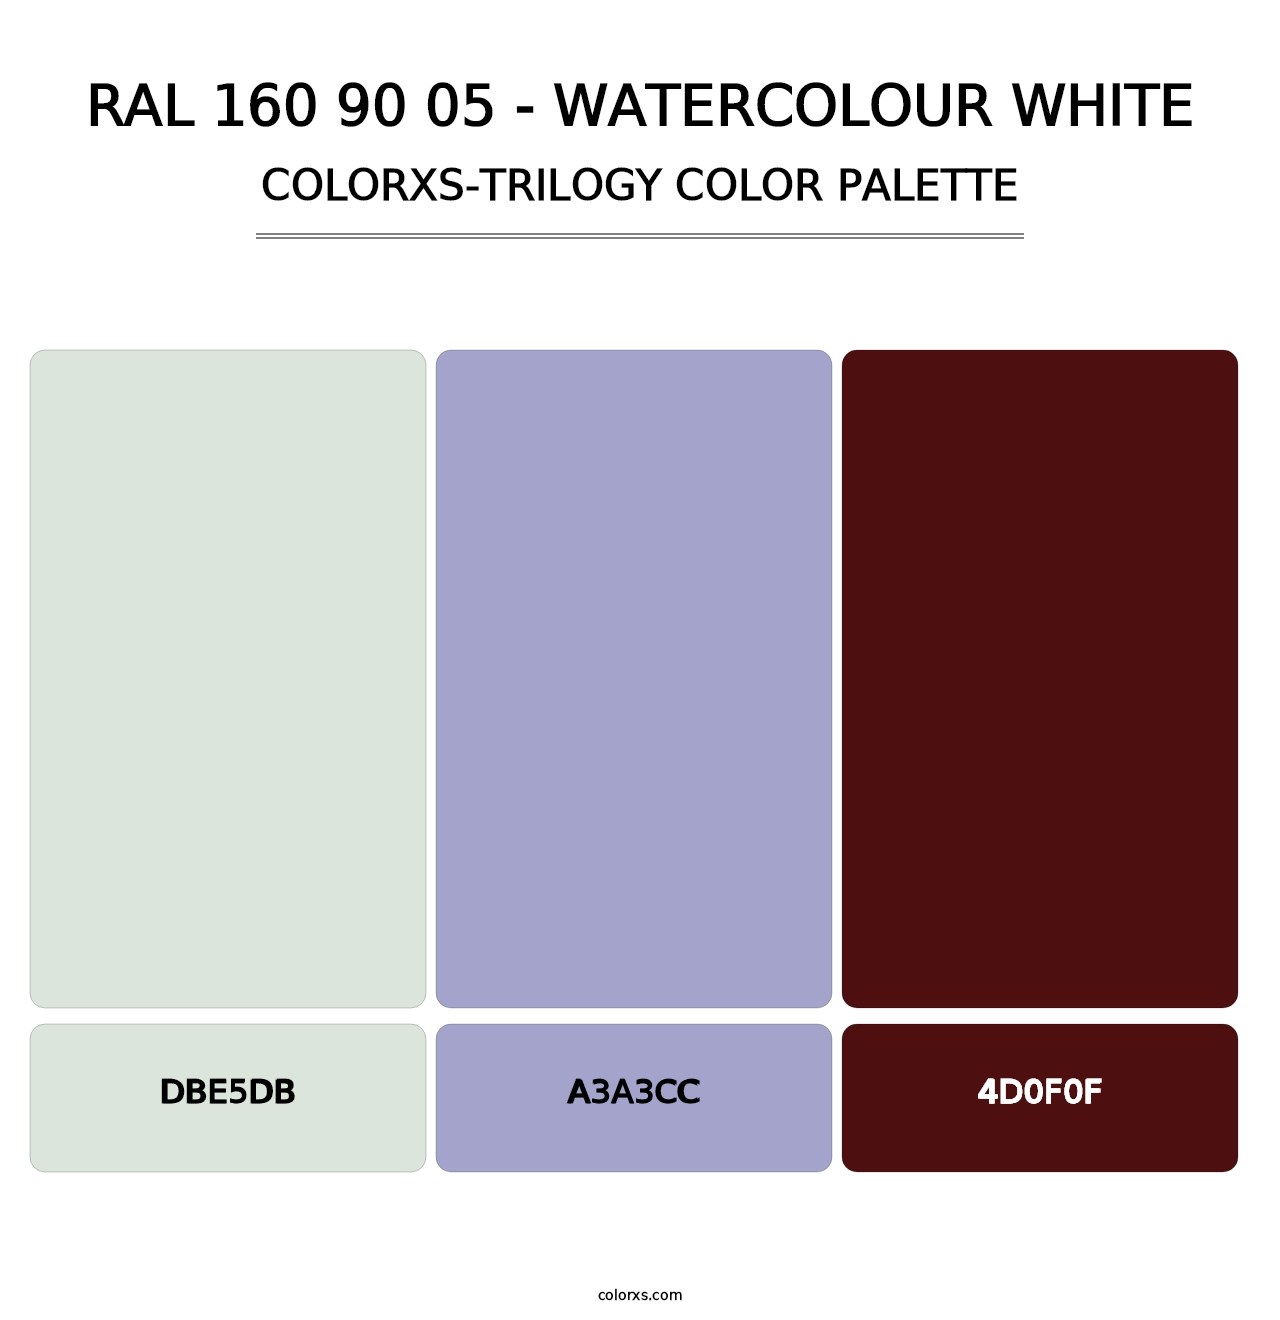 RAL 160 90 05 - Watercolour White - Colorxs Trilogy Palette